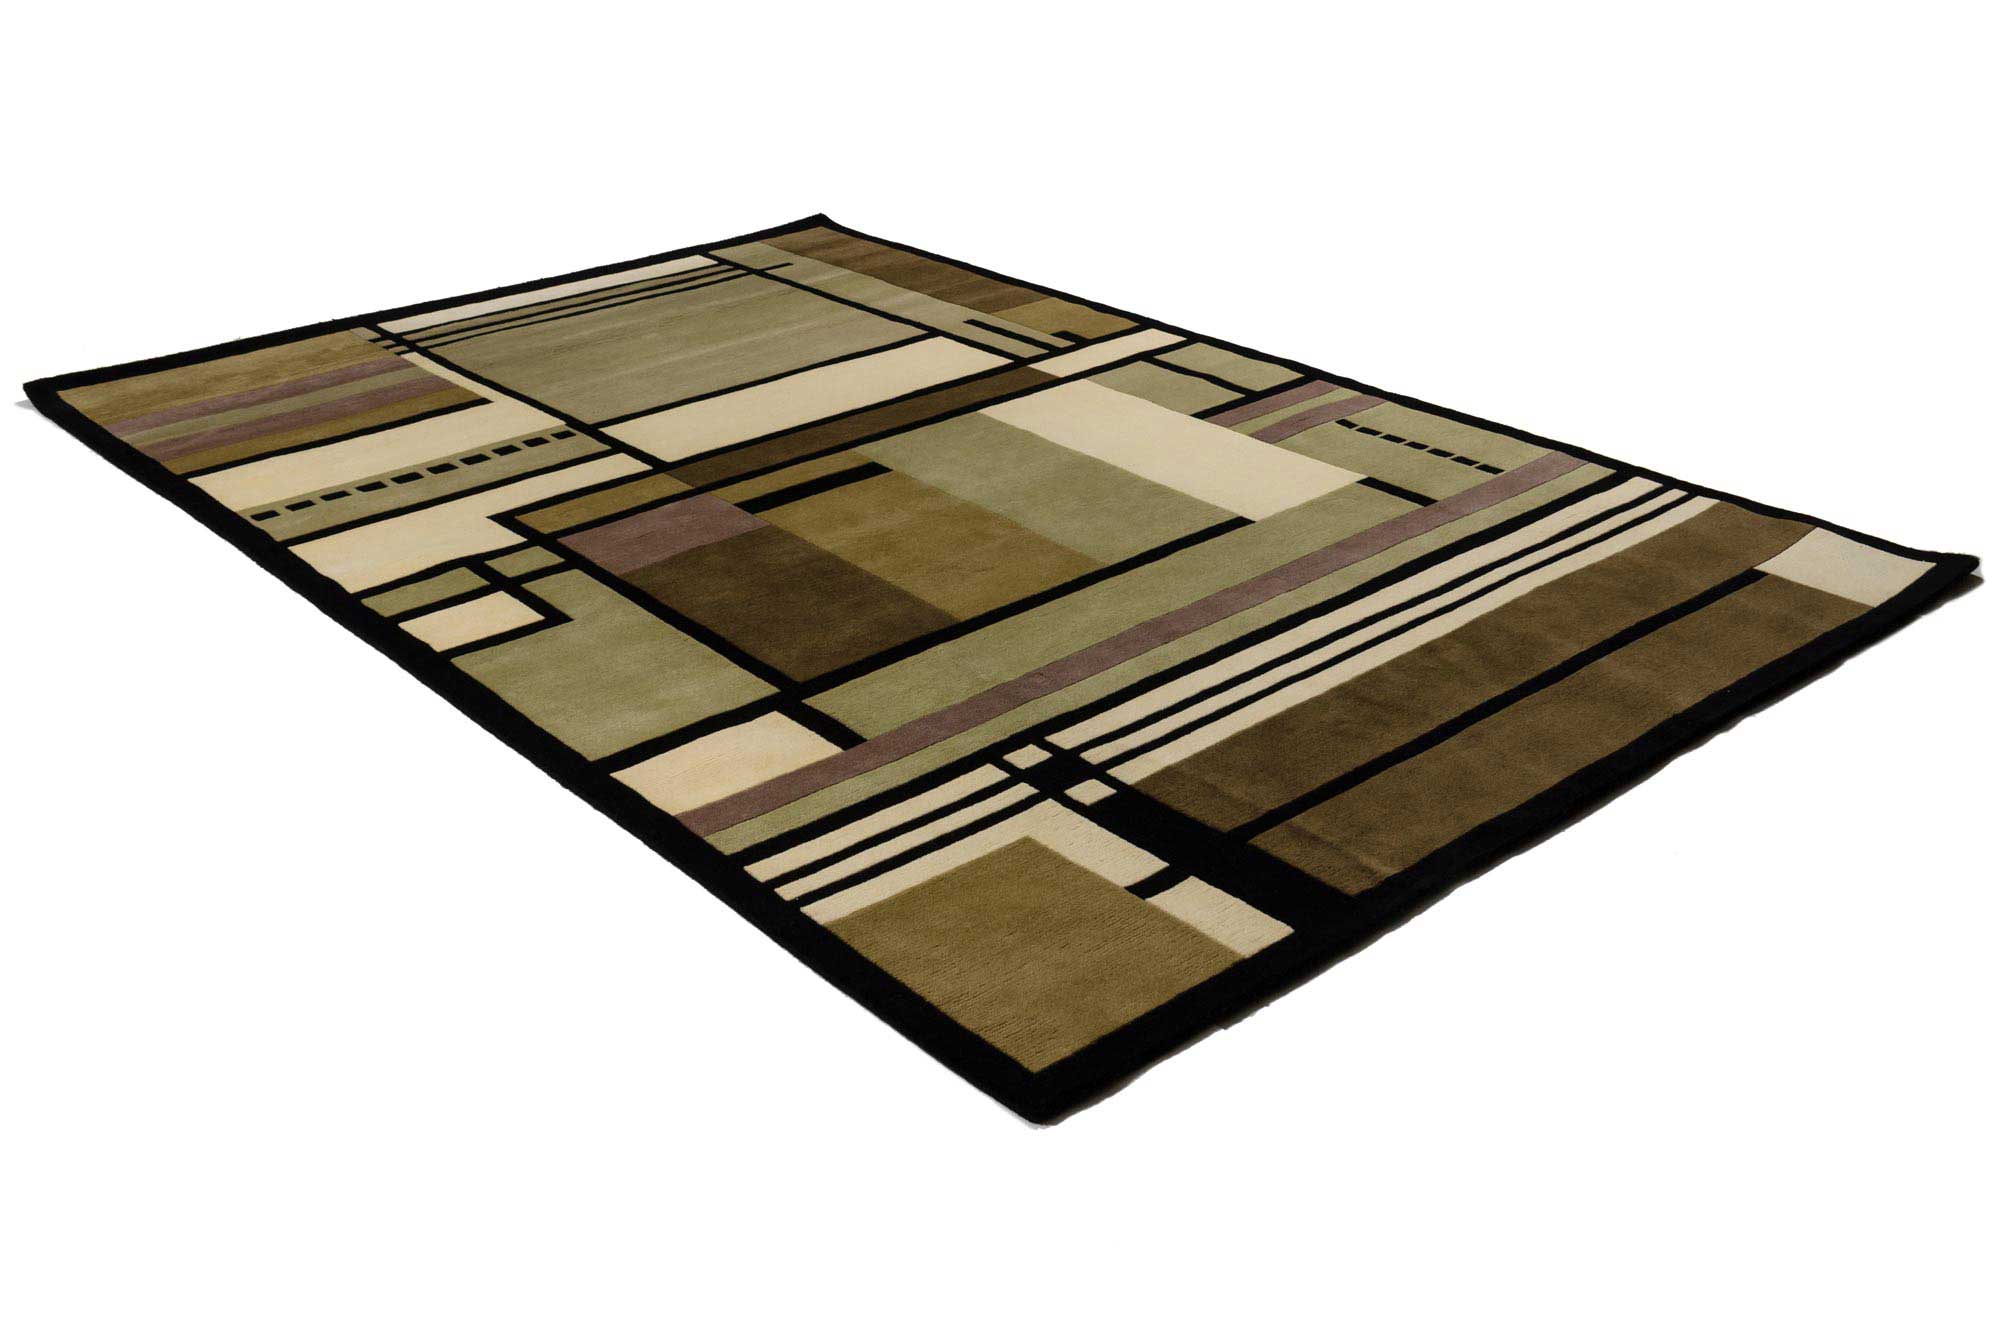 Artdeco style rug